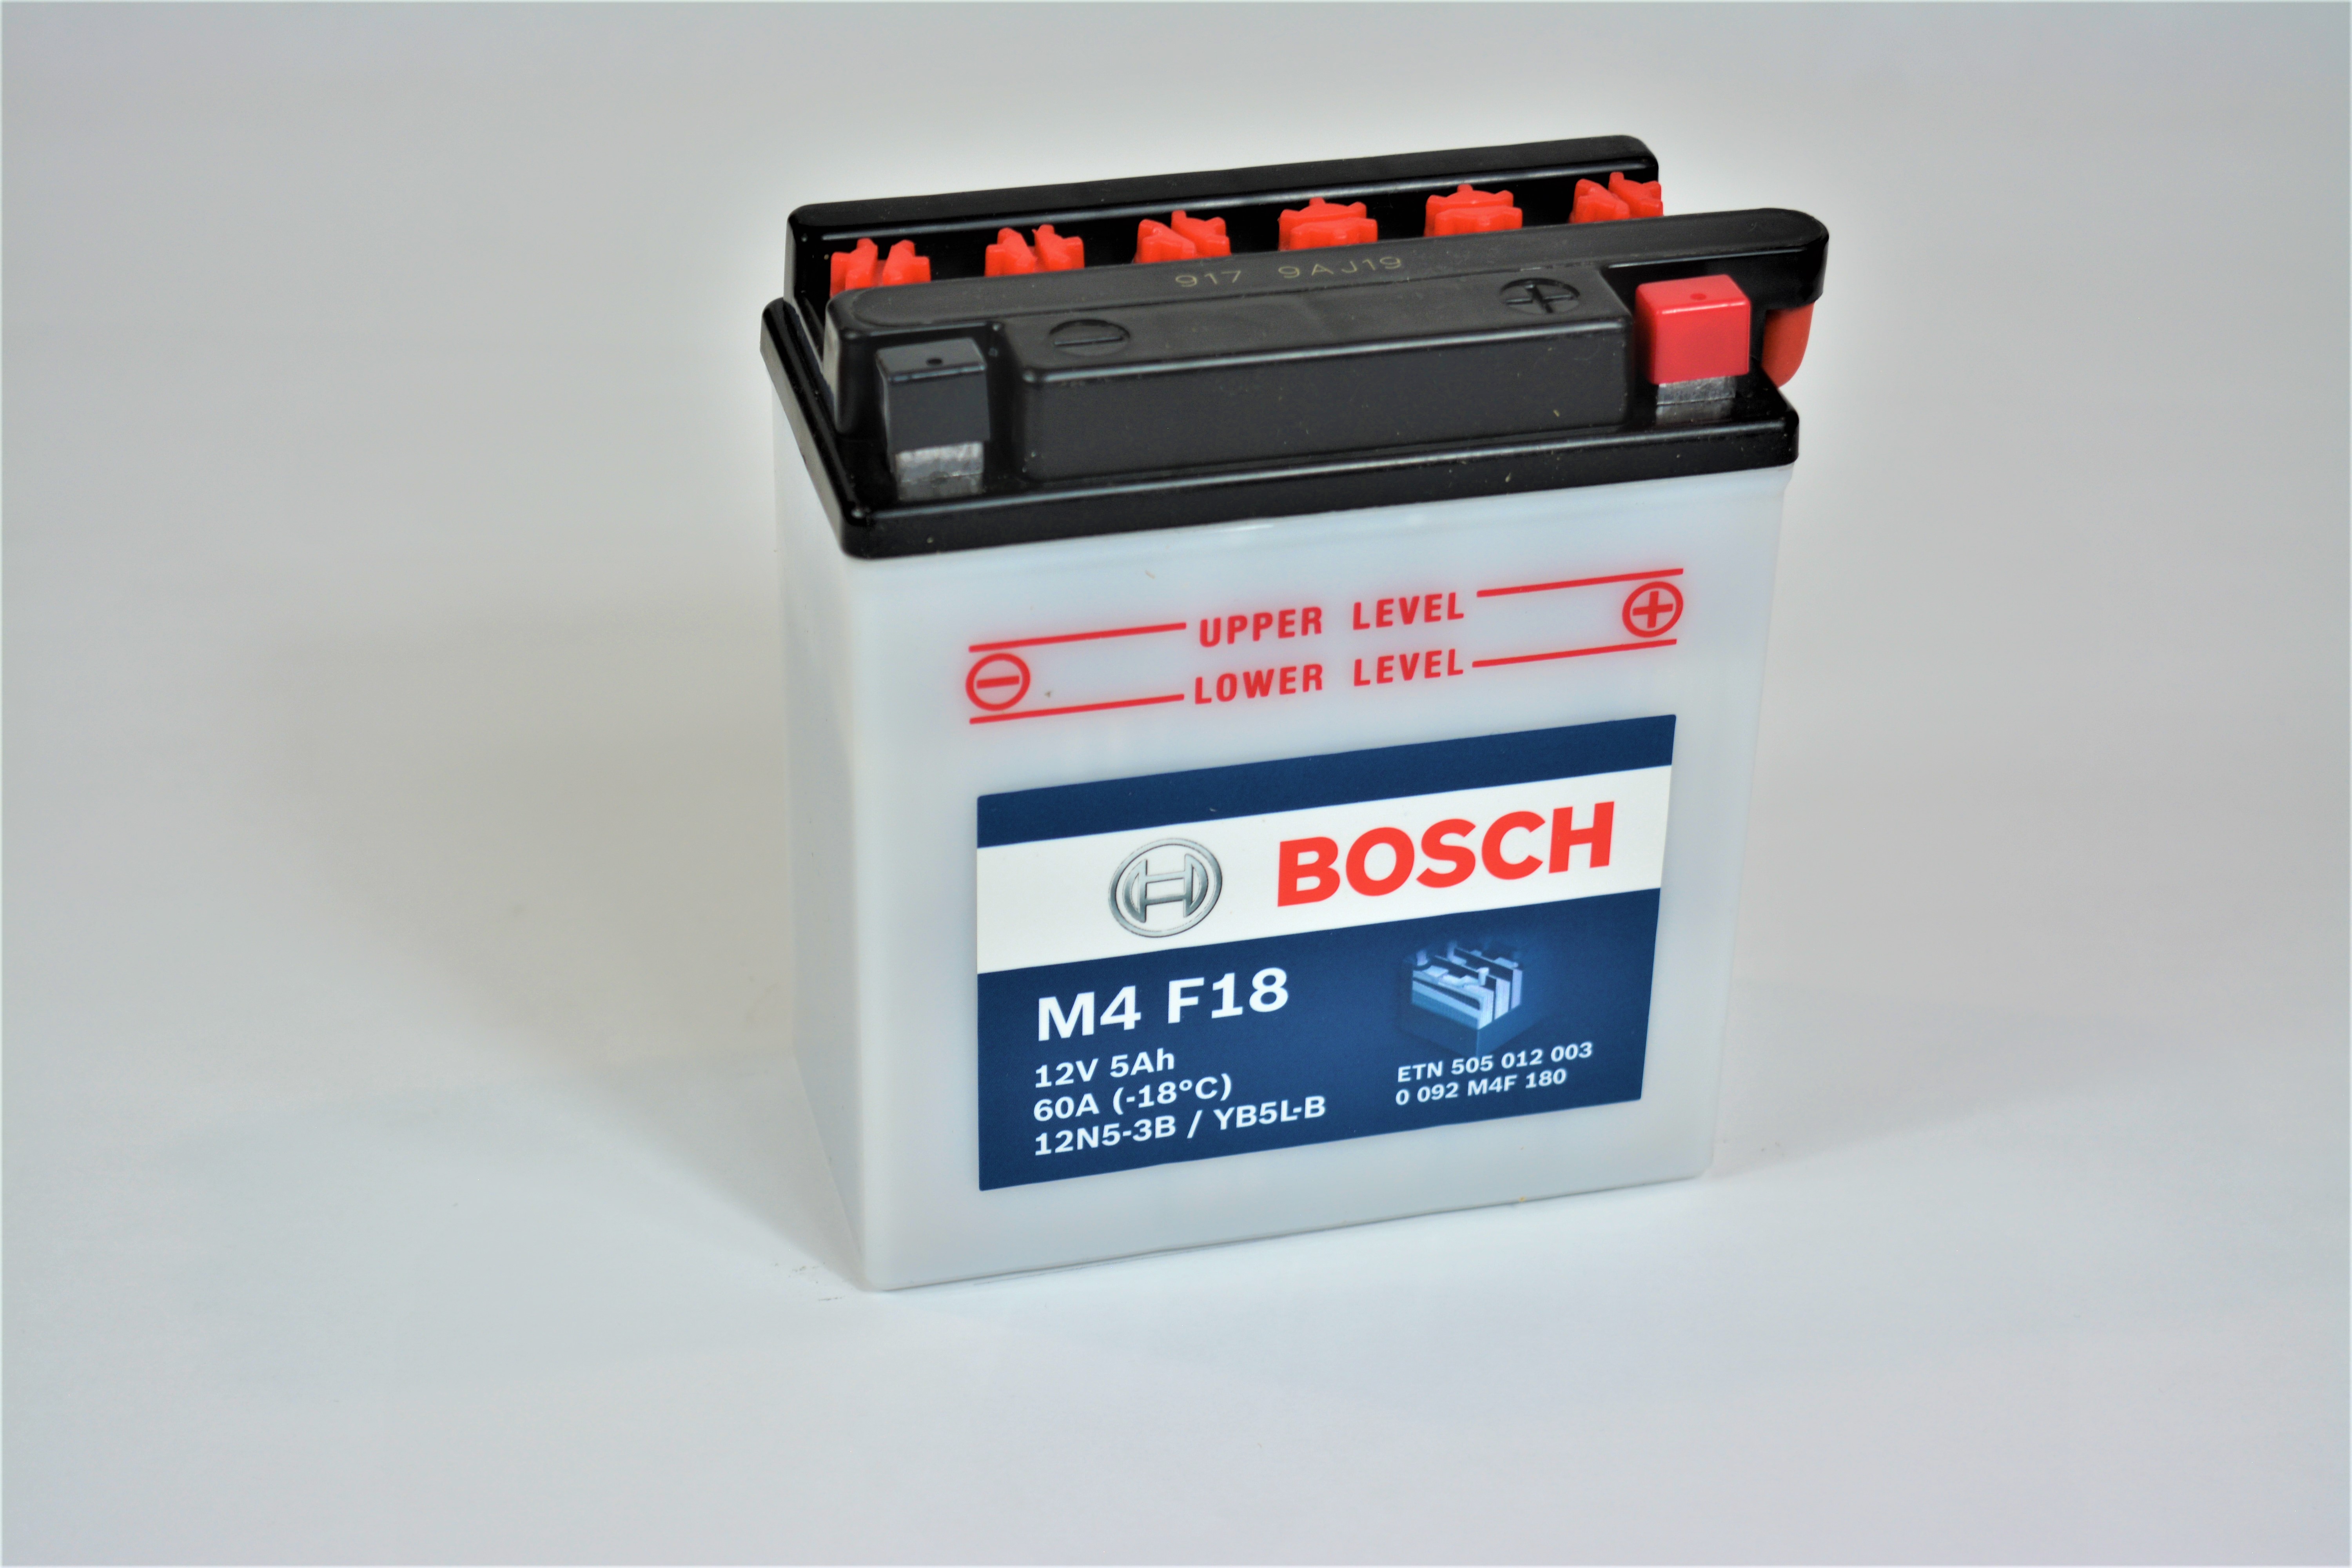 BOSCH Bosch - 12v 5ah - motor akkumulátor - jobb+ *YB5L-B